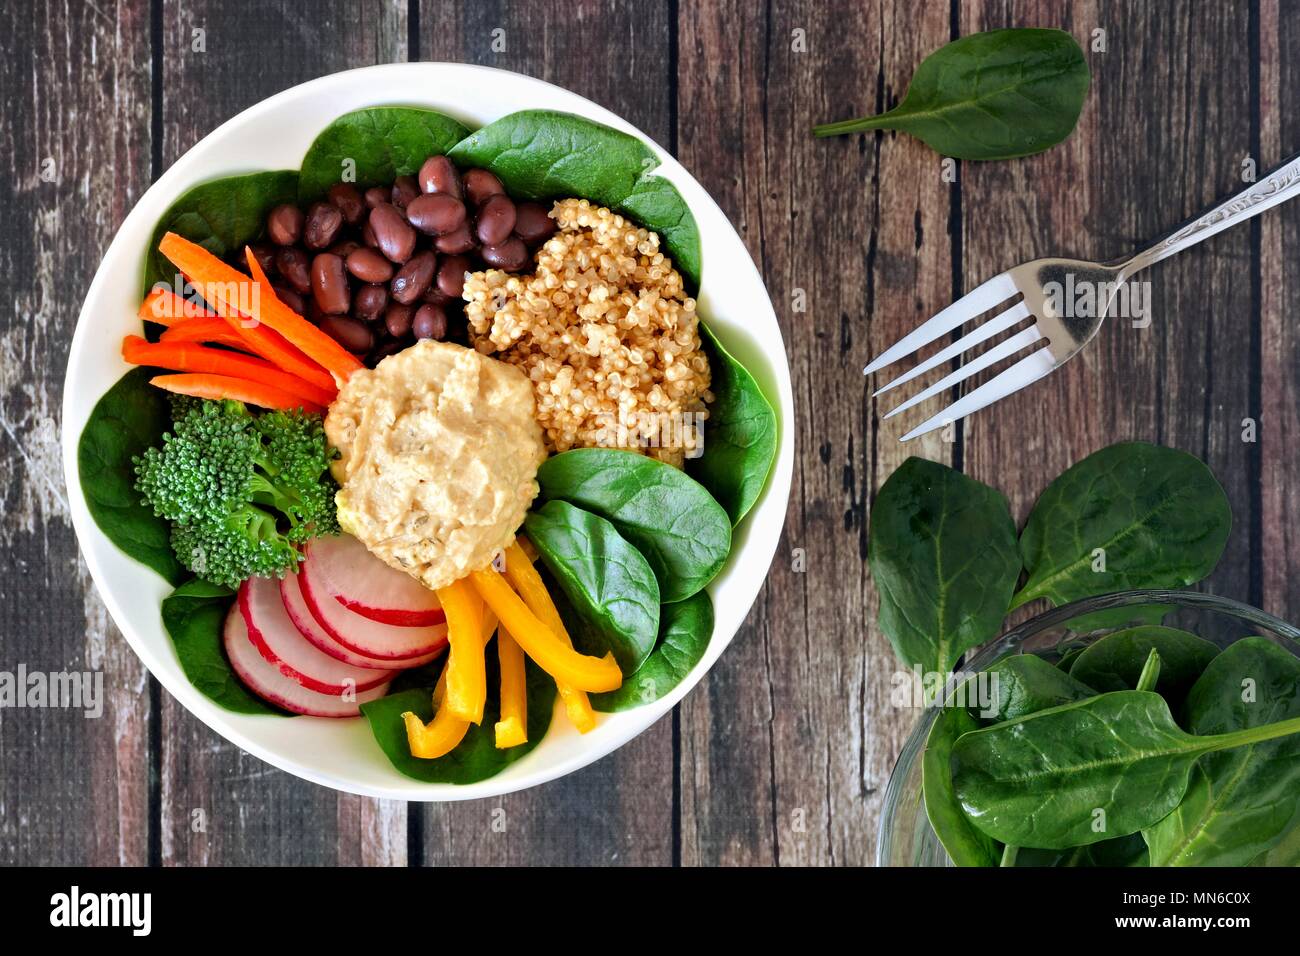 Pranzo sano ciotola con la quinoa, hummus e verdure miste, overhead scena su un rustico sfondo legno Foto Stock